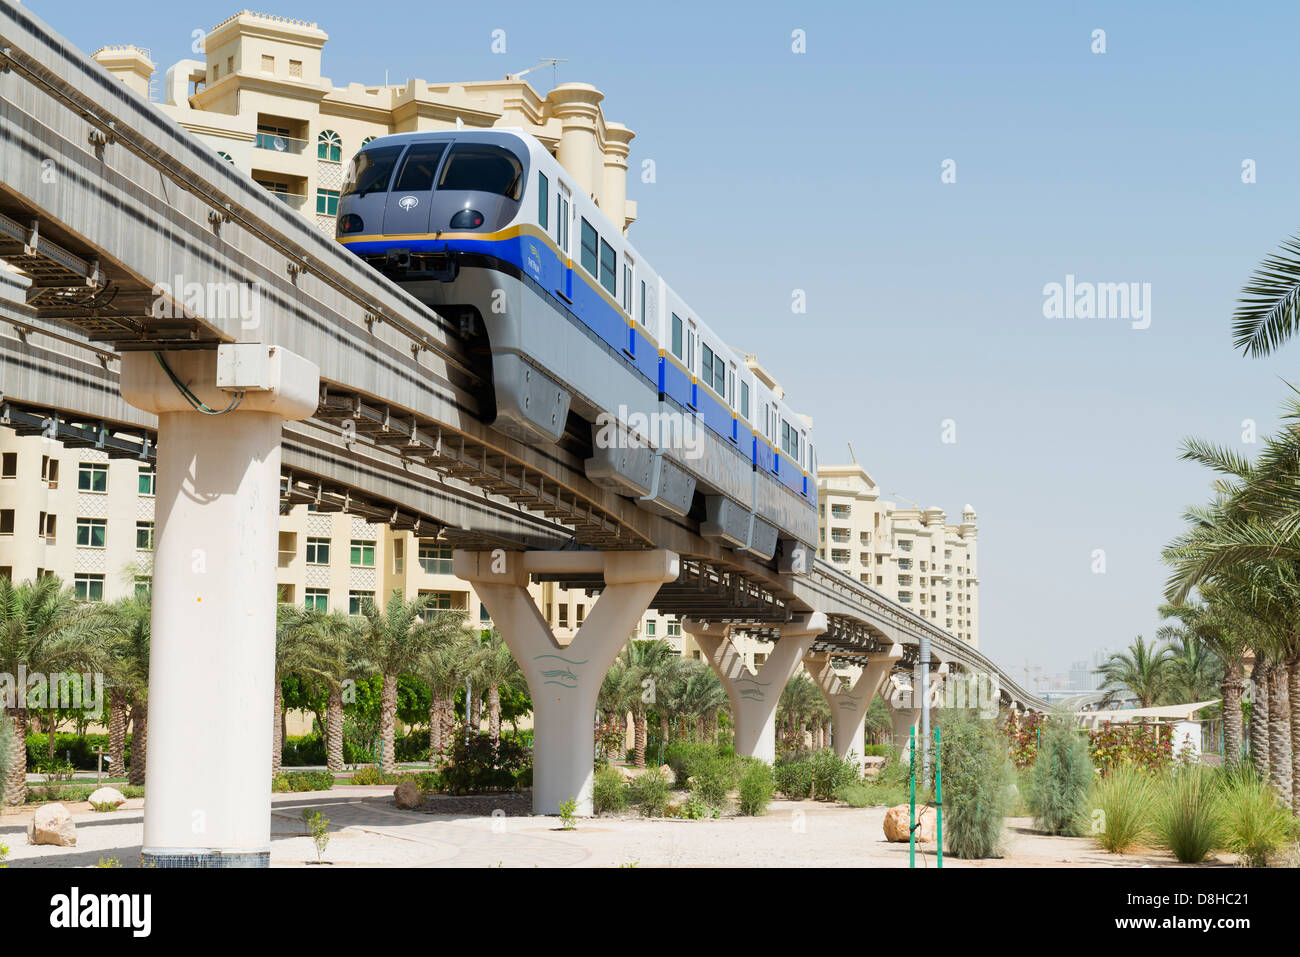 Obenliegenden Einschienenbahn-Eisenbahn, die Transport der Passagiere zum The Atlantis Hotel auf der Insel The Palm Jumeirah in Dubai Vereinigte Arabische Emirate Stockfoto